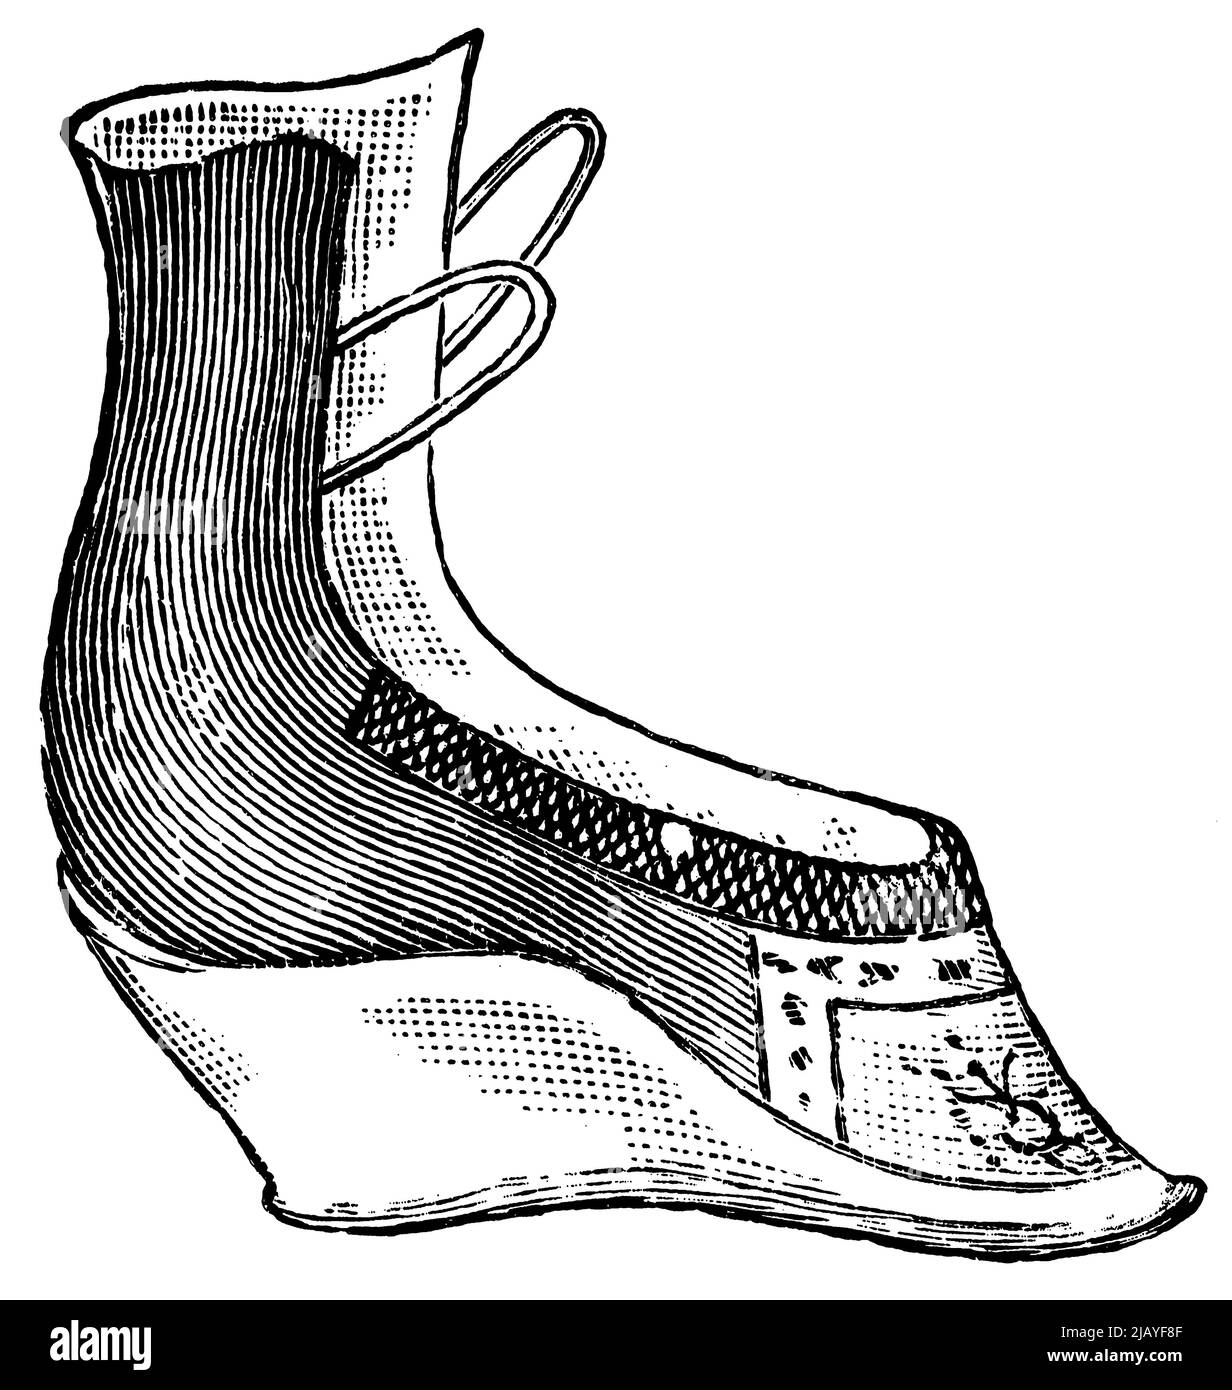 Ein Lotusschuh für gebundene Füße. China. Veröffentlichung des Buches 'Meyers Konversations-Lexikon', Band 2, Leipzig, Deutschland, 1910 Stockfoto